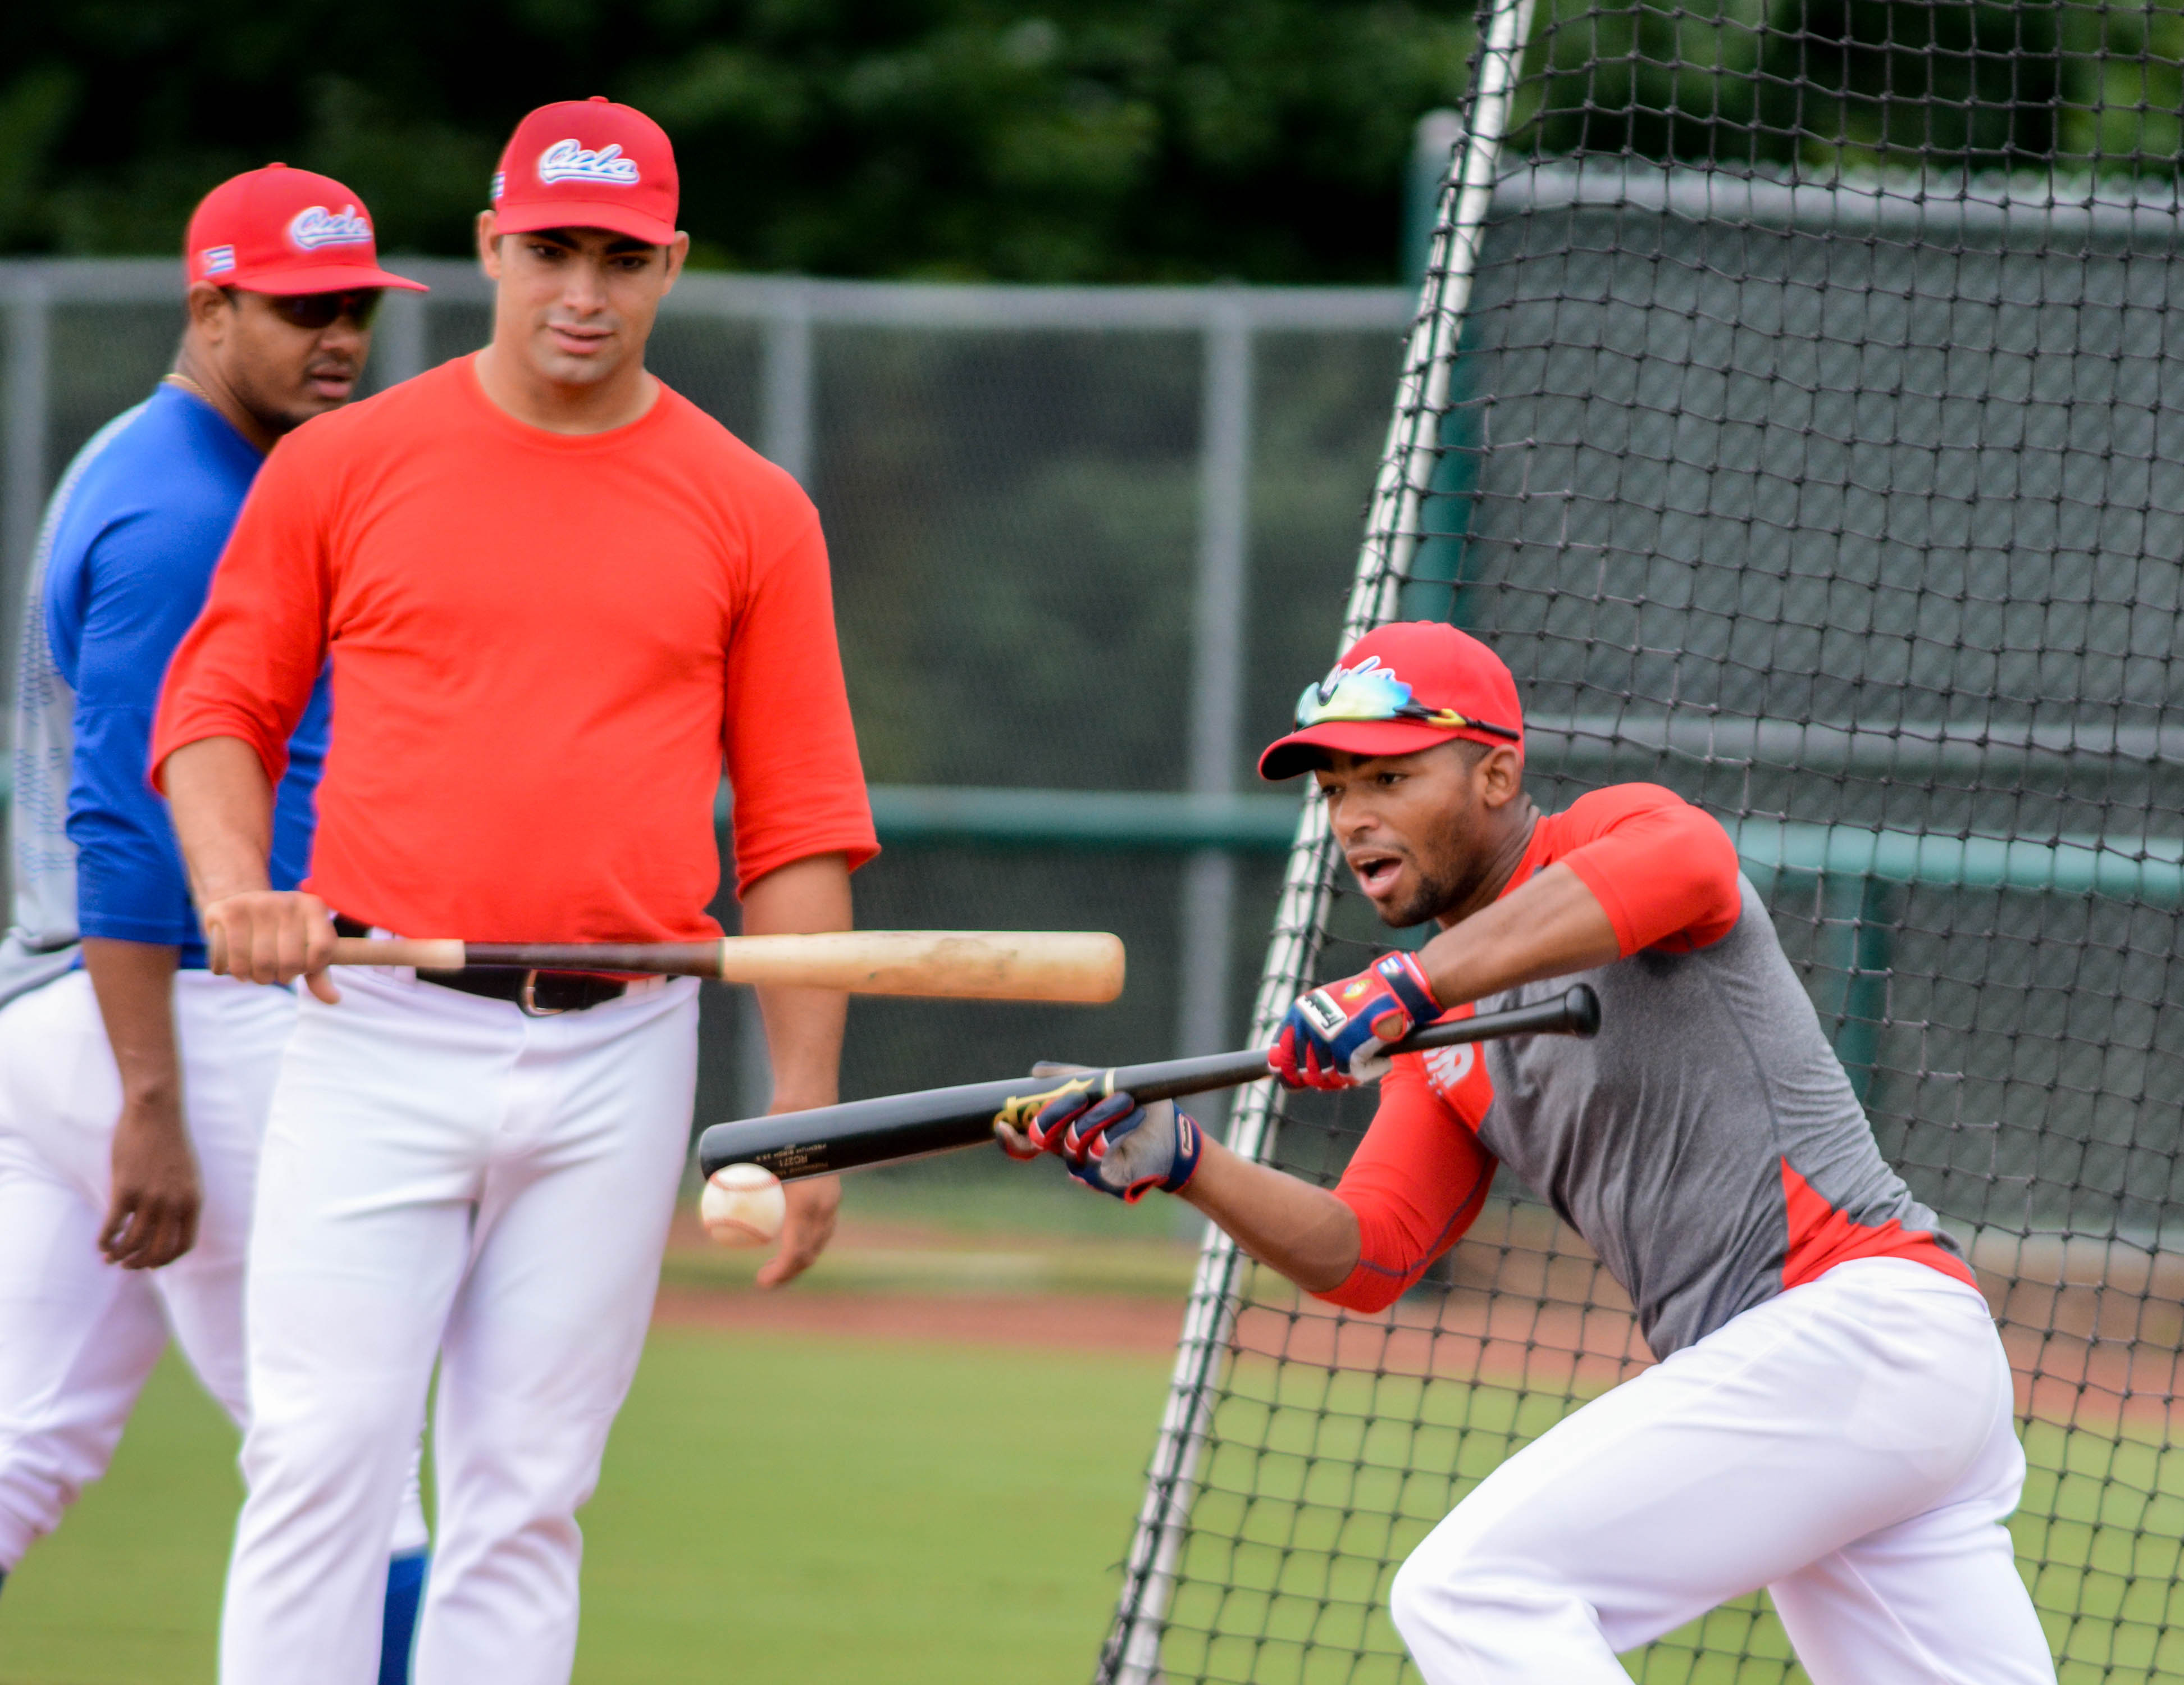 Las prácticas del equipo Cuba son presenciadas por varios equipos que forman parte de la organización USA Baseball. Foto: Abel Padrón Padilla